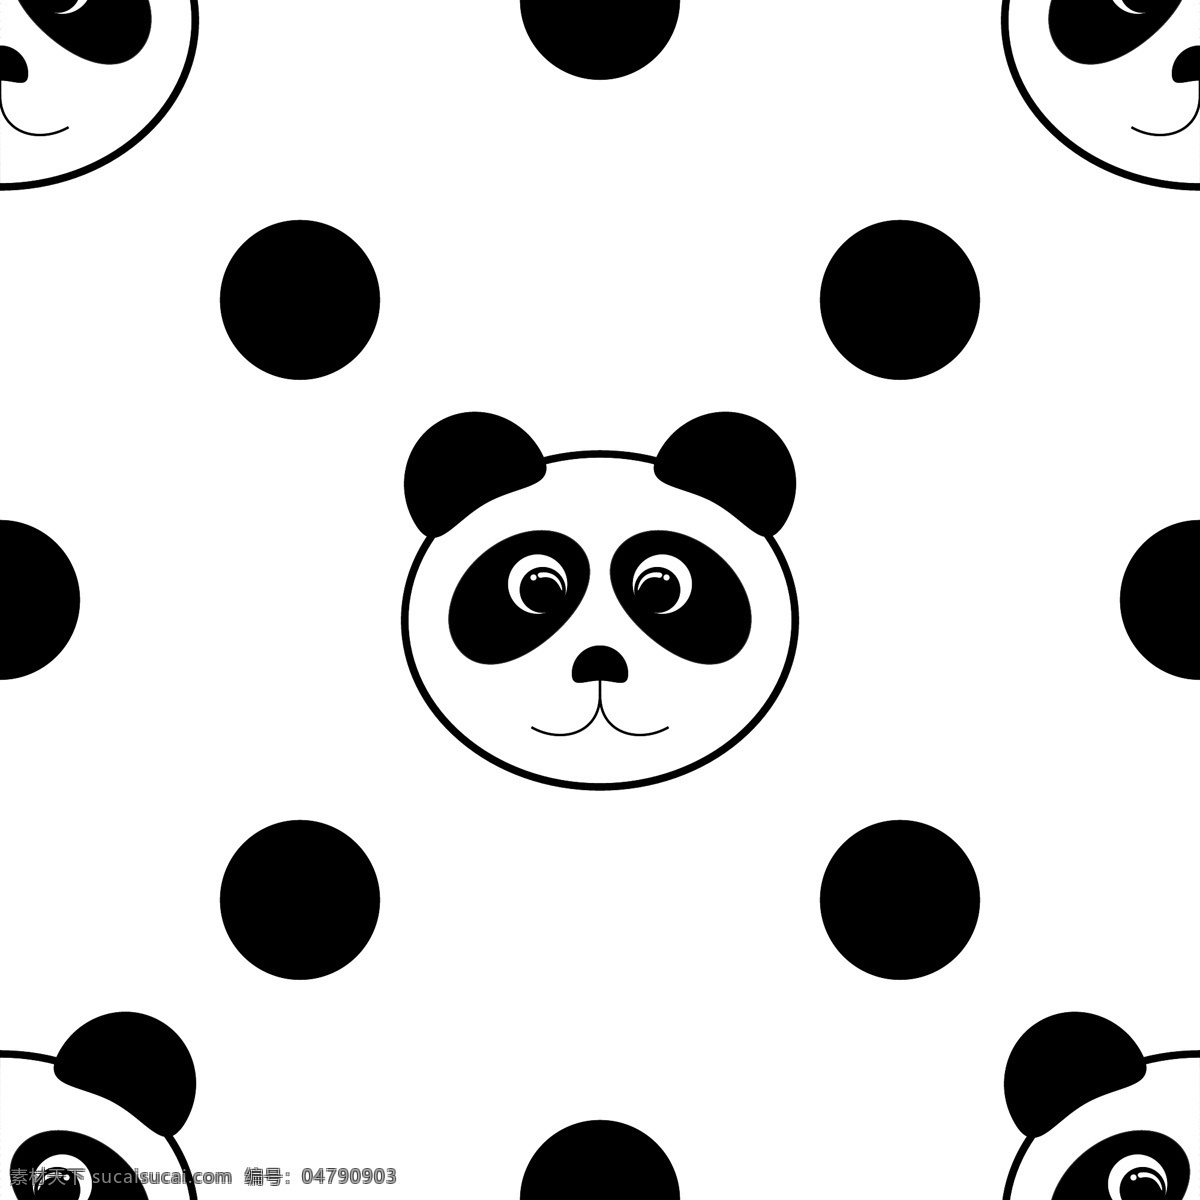 可爱熊猫背景 背景 背景素材 广告背景 矢量素材 时尚背景 时尚花纹 花纹背景 熊猫